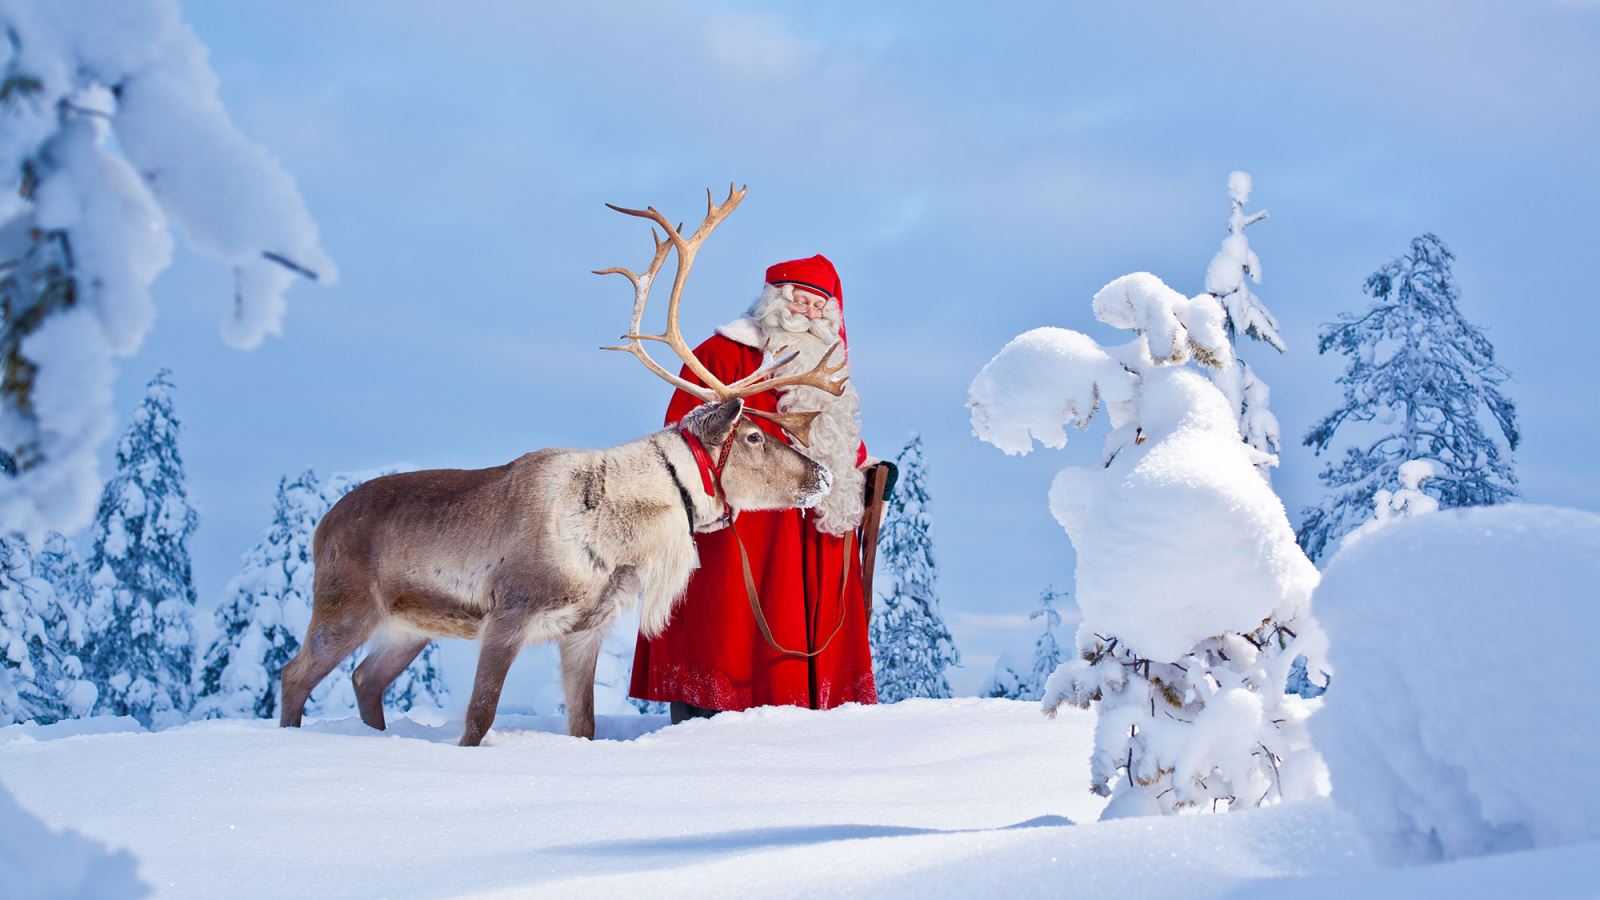 Rovaniemi - thành phố địa điểm du lịch tuyệt vời và là quê hương của ông già Noel. Với những con đường tuyết phủ trắng muốt, công viên đầy những ngôi nhà gỗ đẹp mắt và chủ đề Giáng sinh ở khắp nơi, đây là điểm đến tuyệt vời cho kỳ nghỉ đông của bạn.